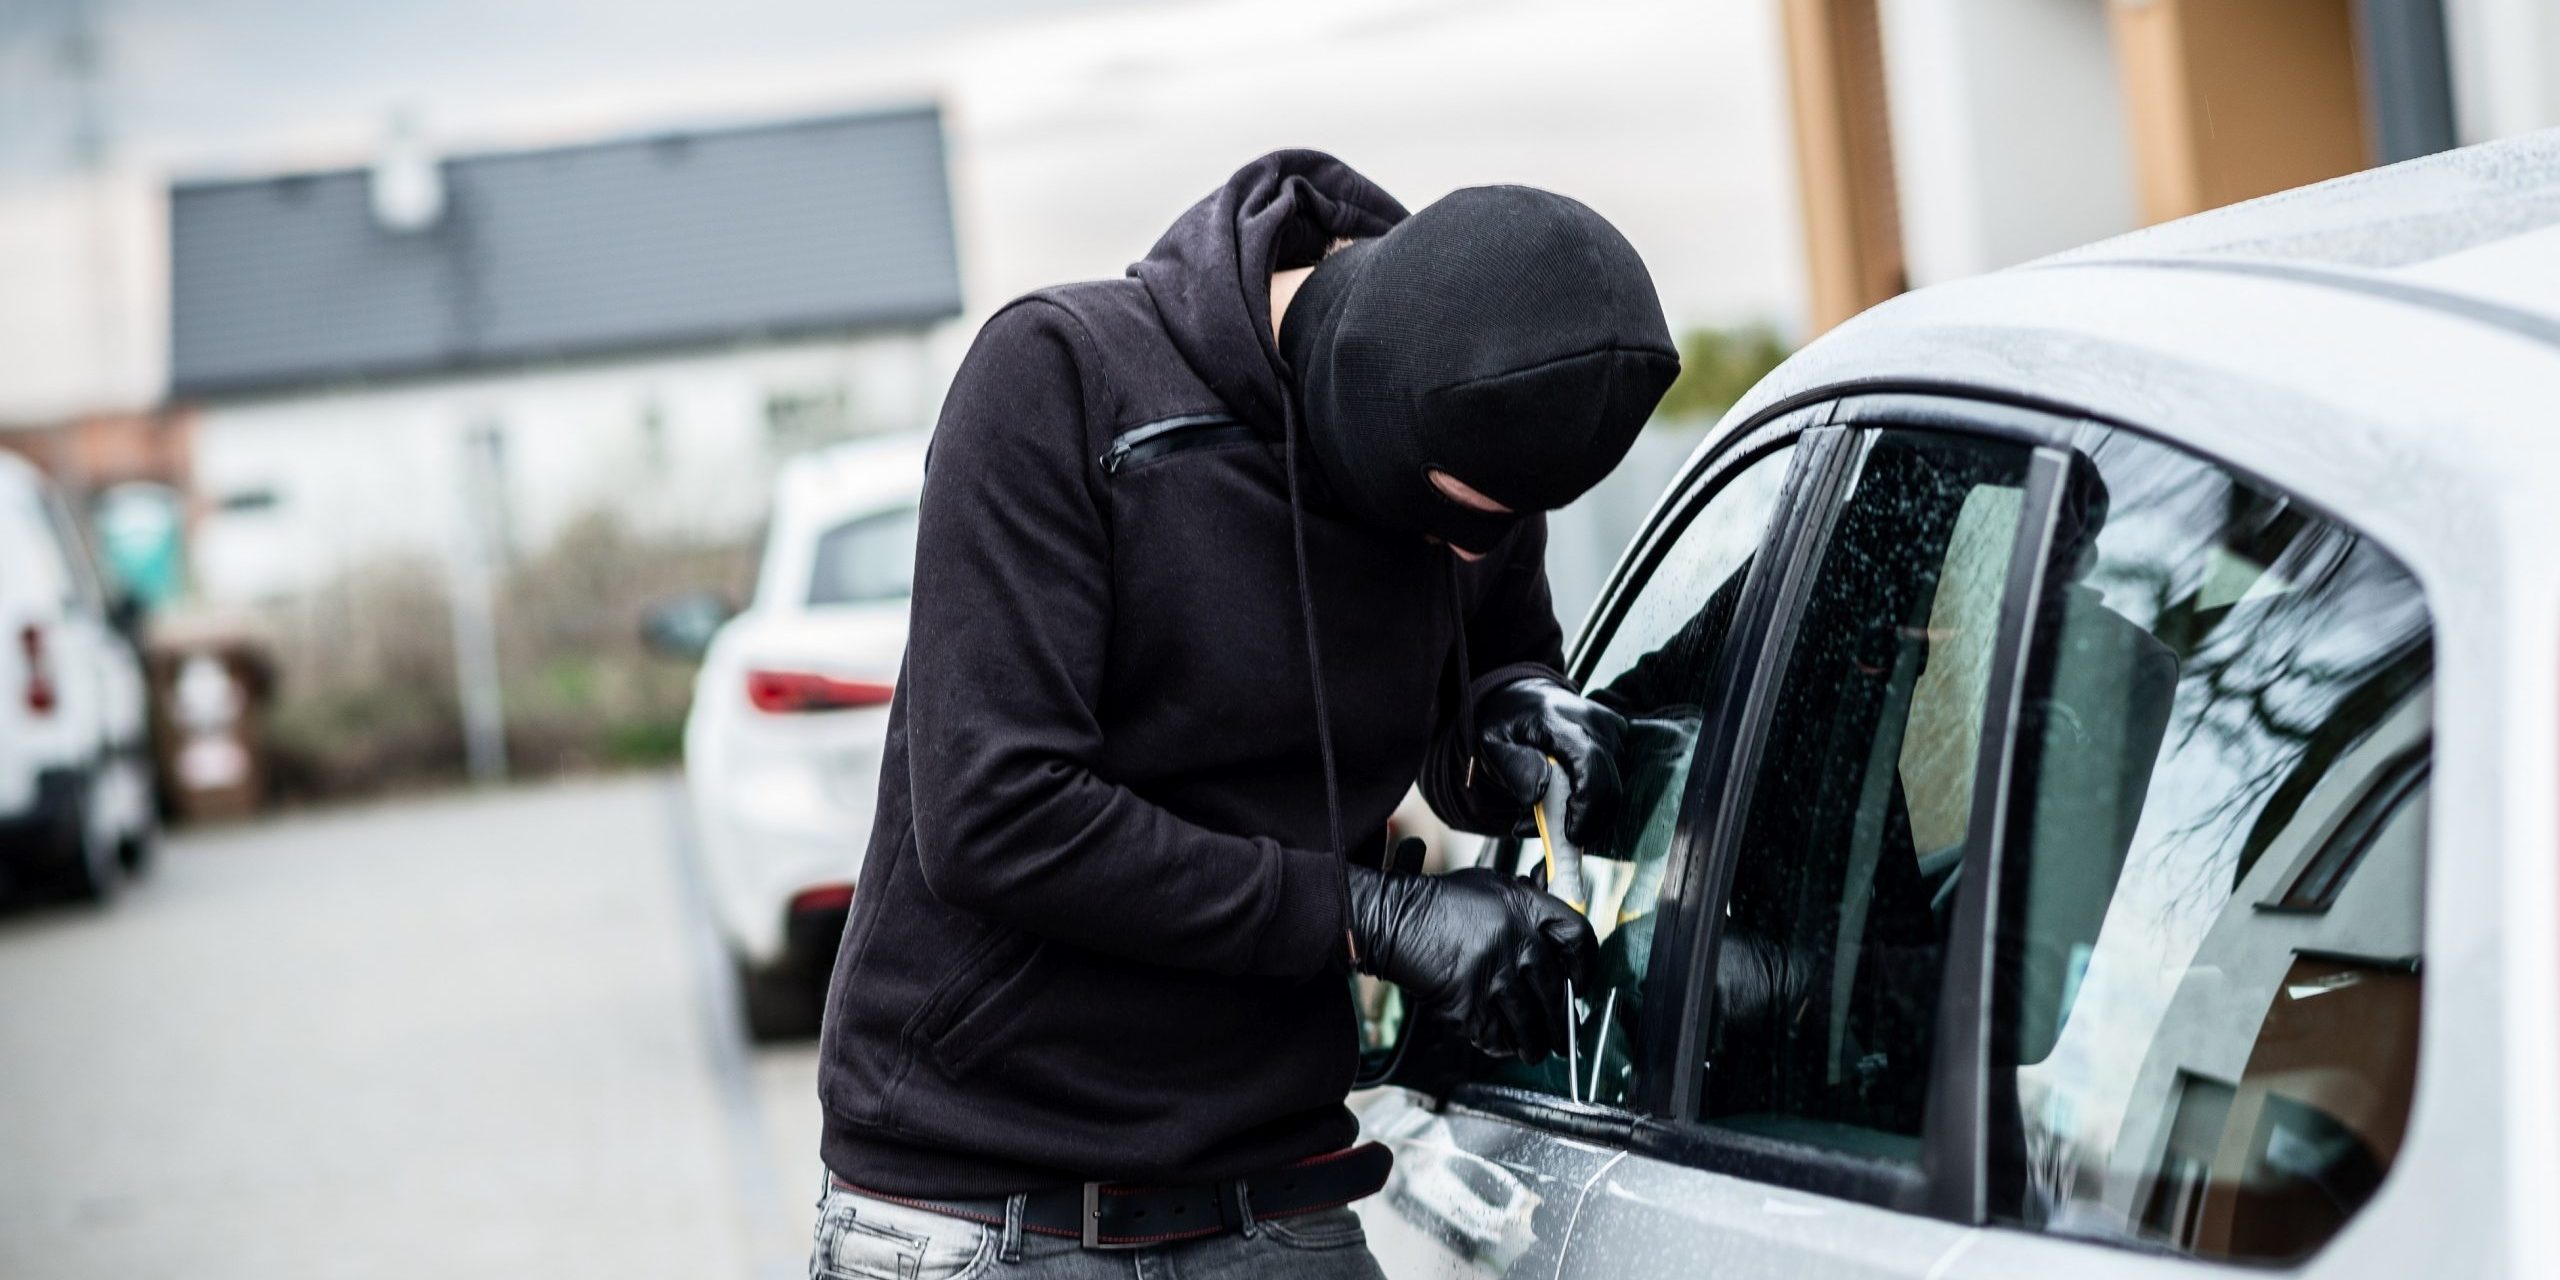 Vehicle robberies increasing